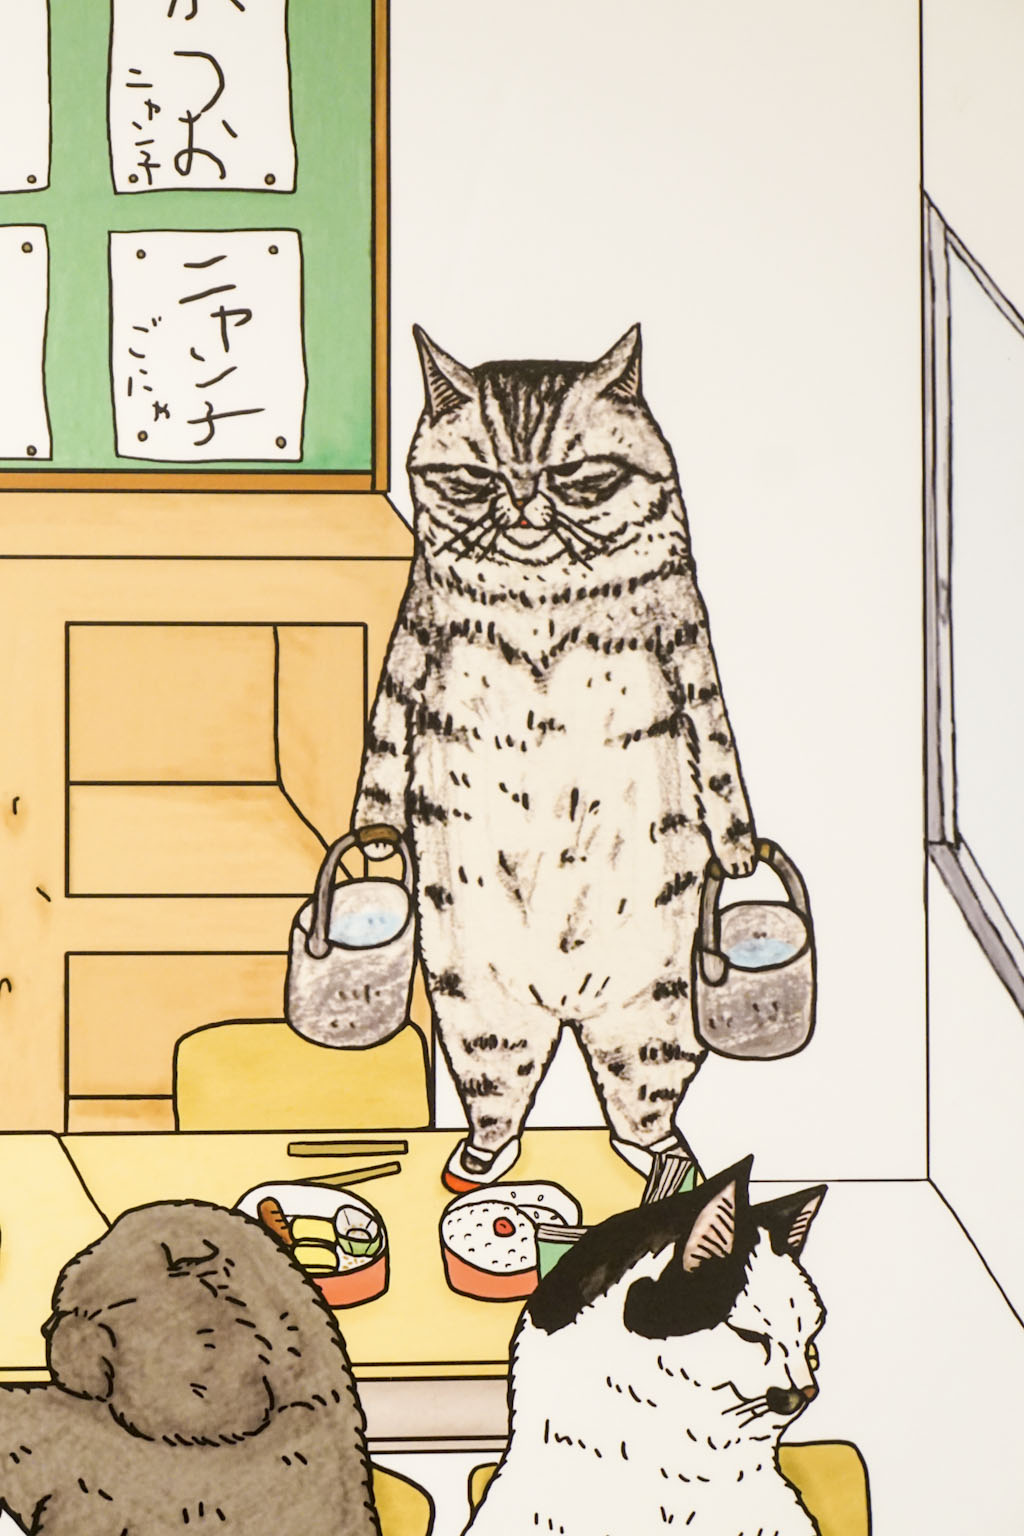 知られざる猫の世界へ行ってきた 広島そごう 土橋わいわいブログ